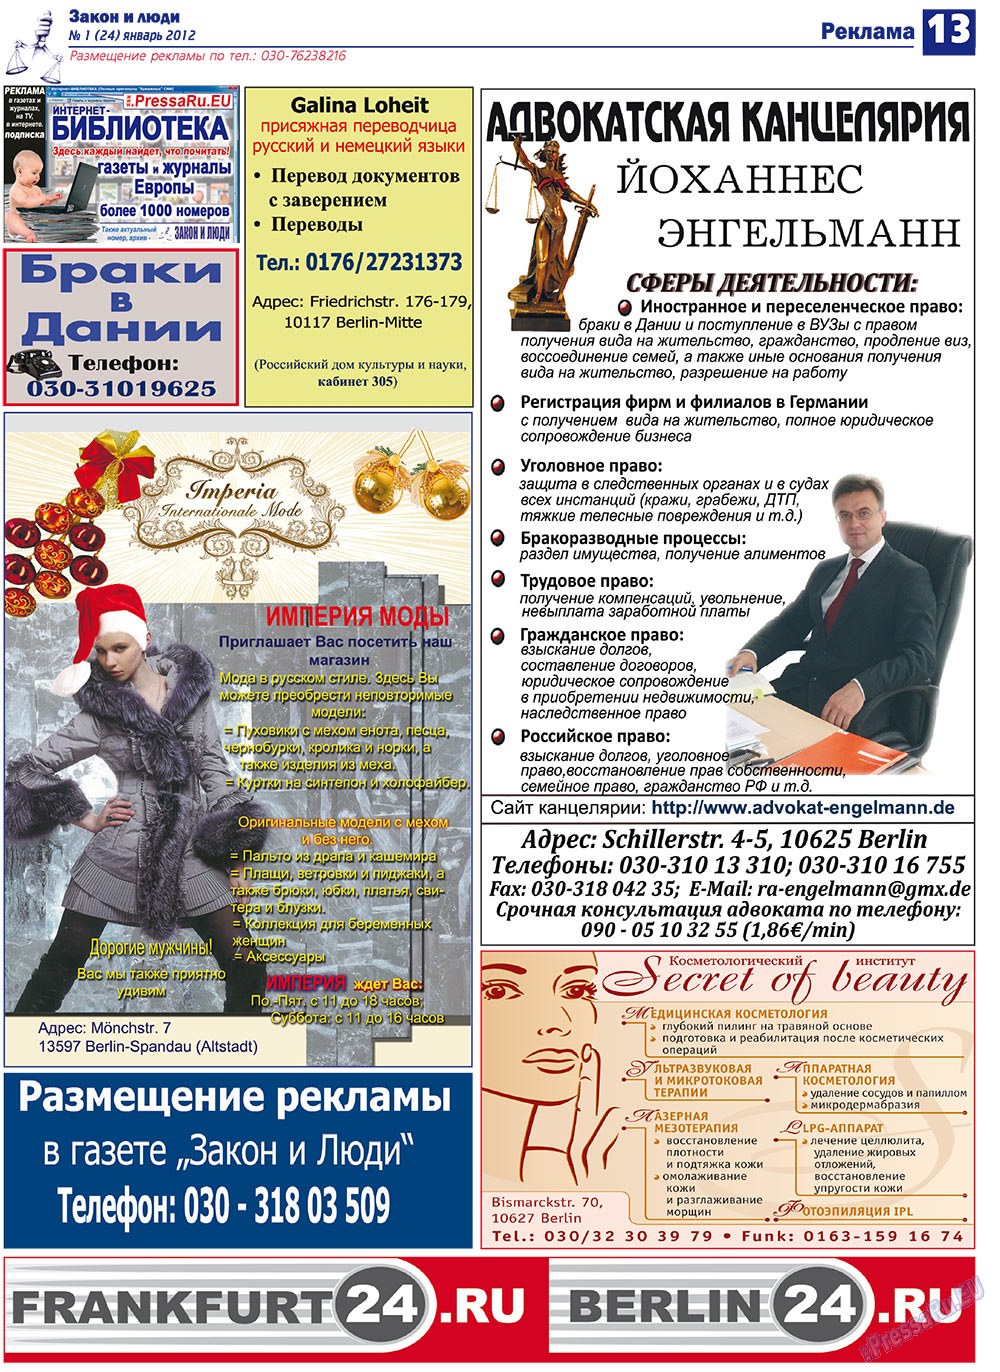 Закон и люди, газета. 2012 №1 стр.13